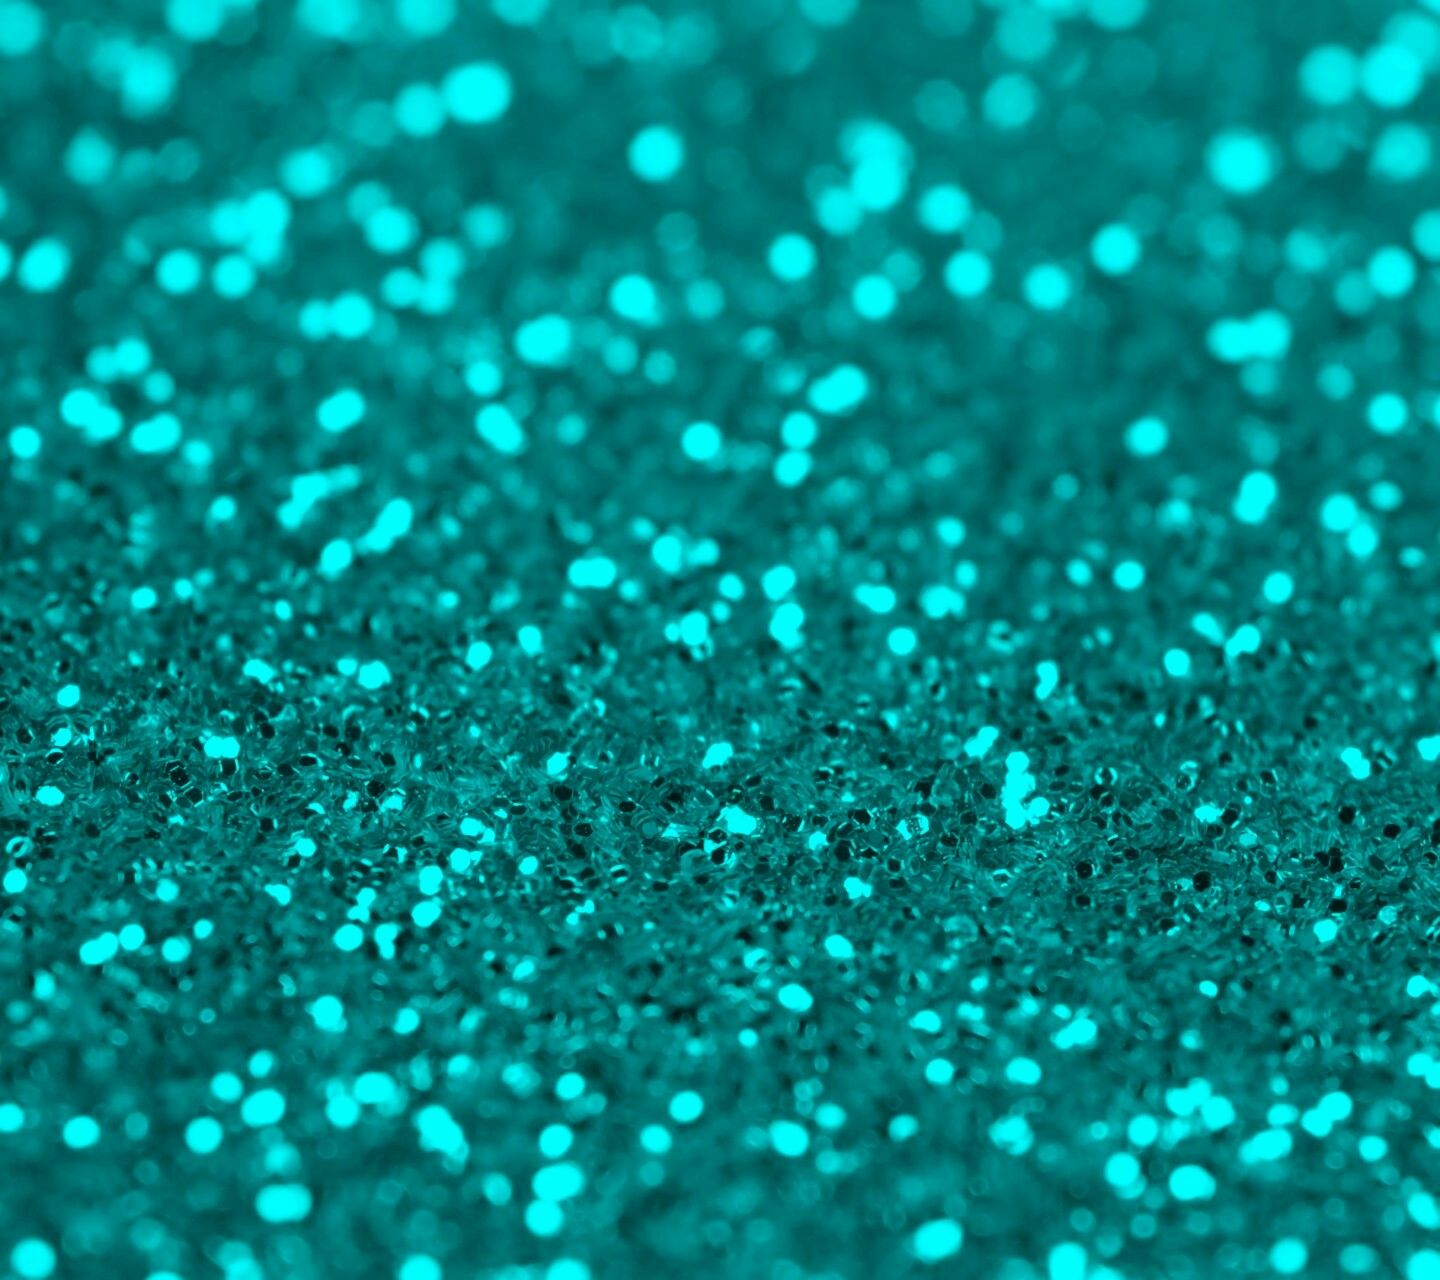 Teal Glitter Wallpaper. Sparkle wallpaper, Glitter wallpaper, Turquoise aesthetic